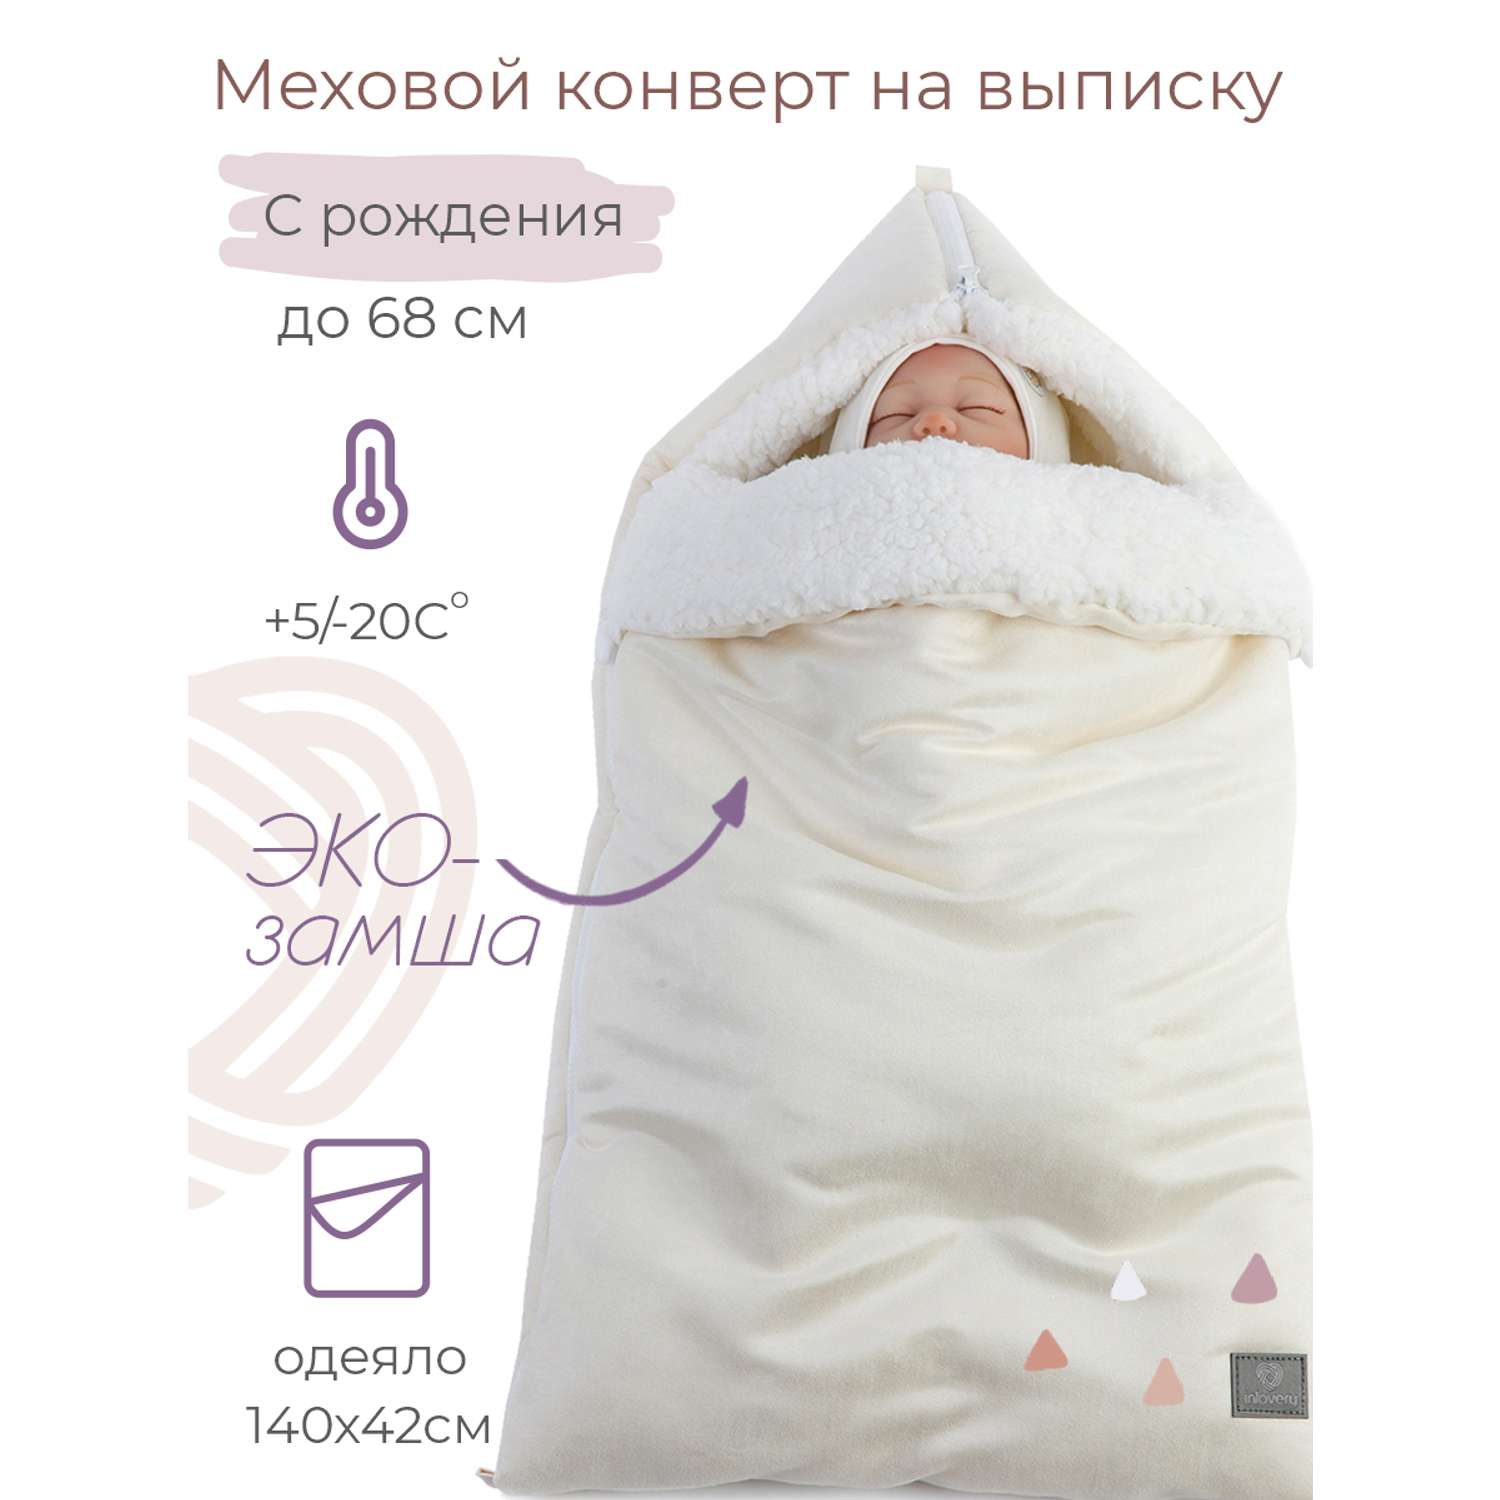 Конверт на выписку inlovery для новорожденного Нордик/молочный - фото 1